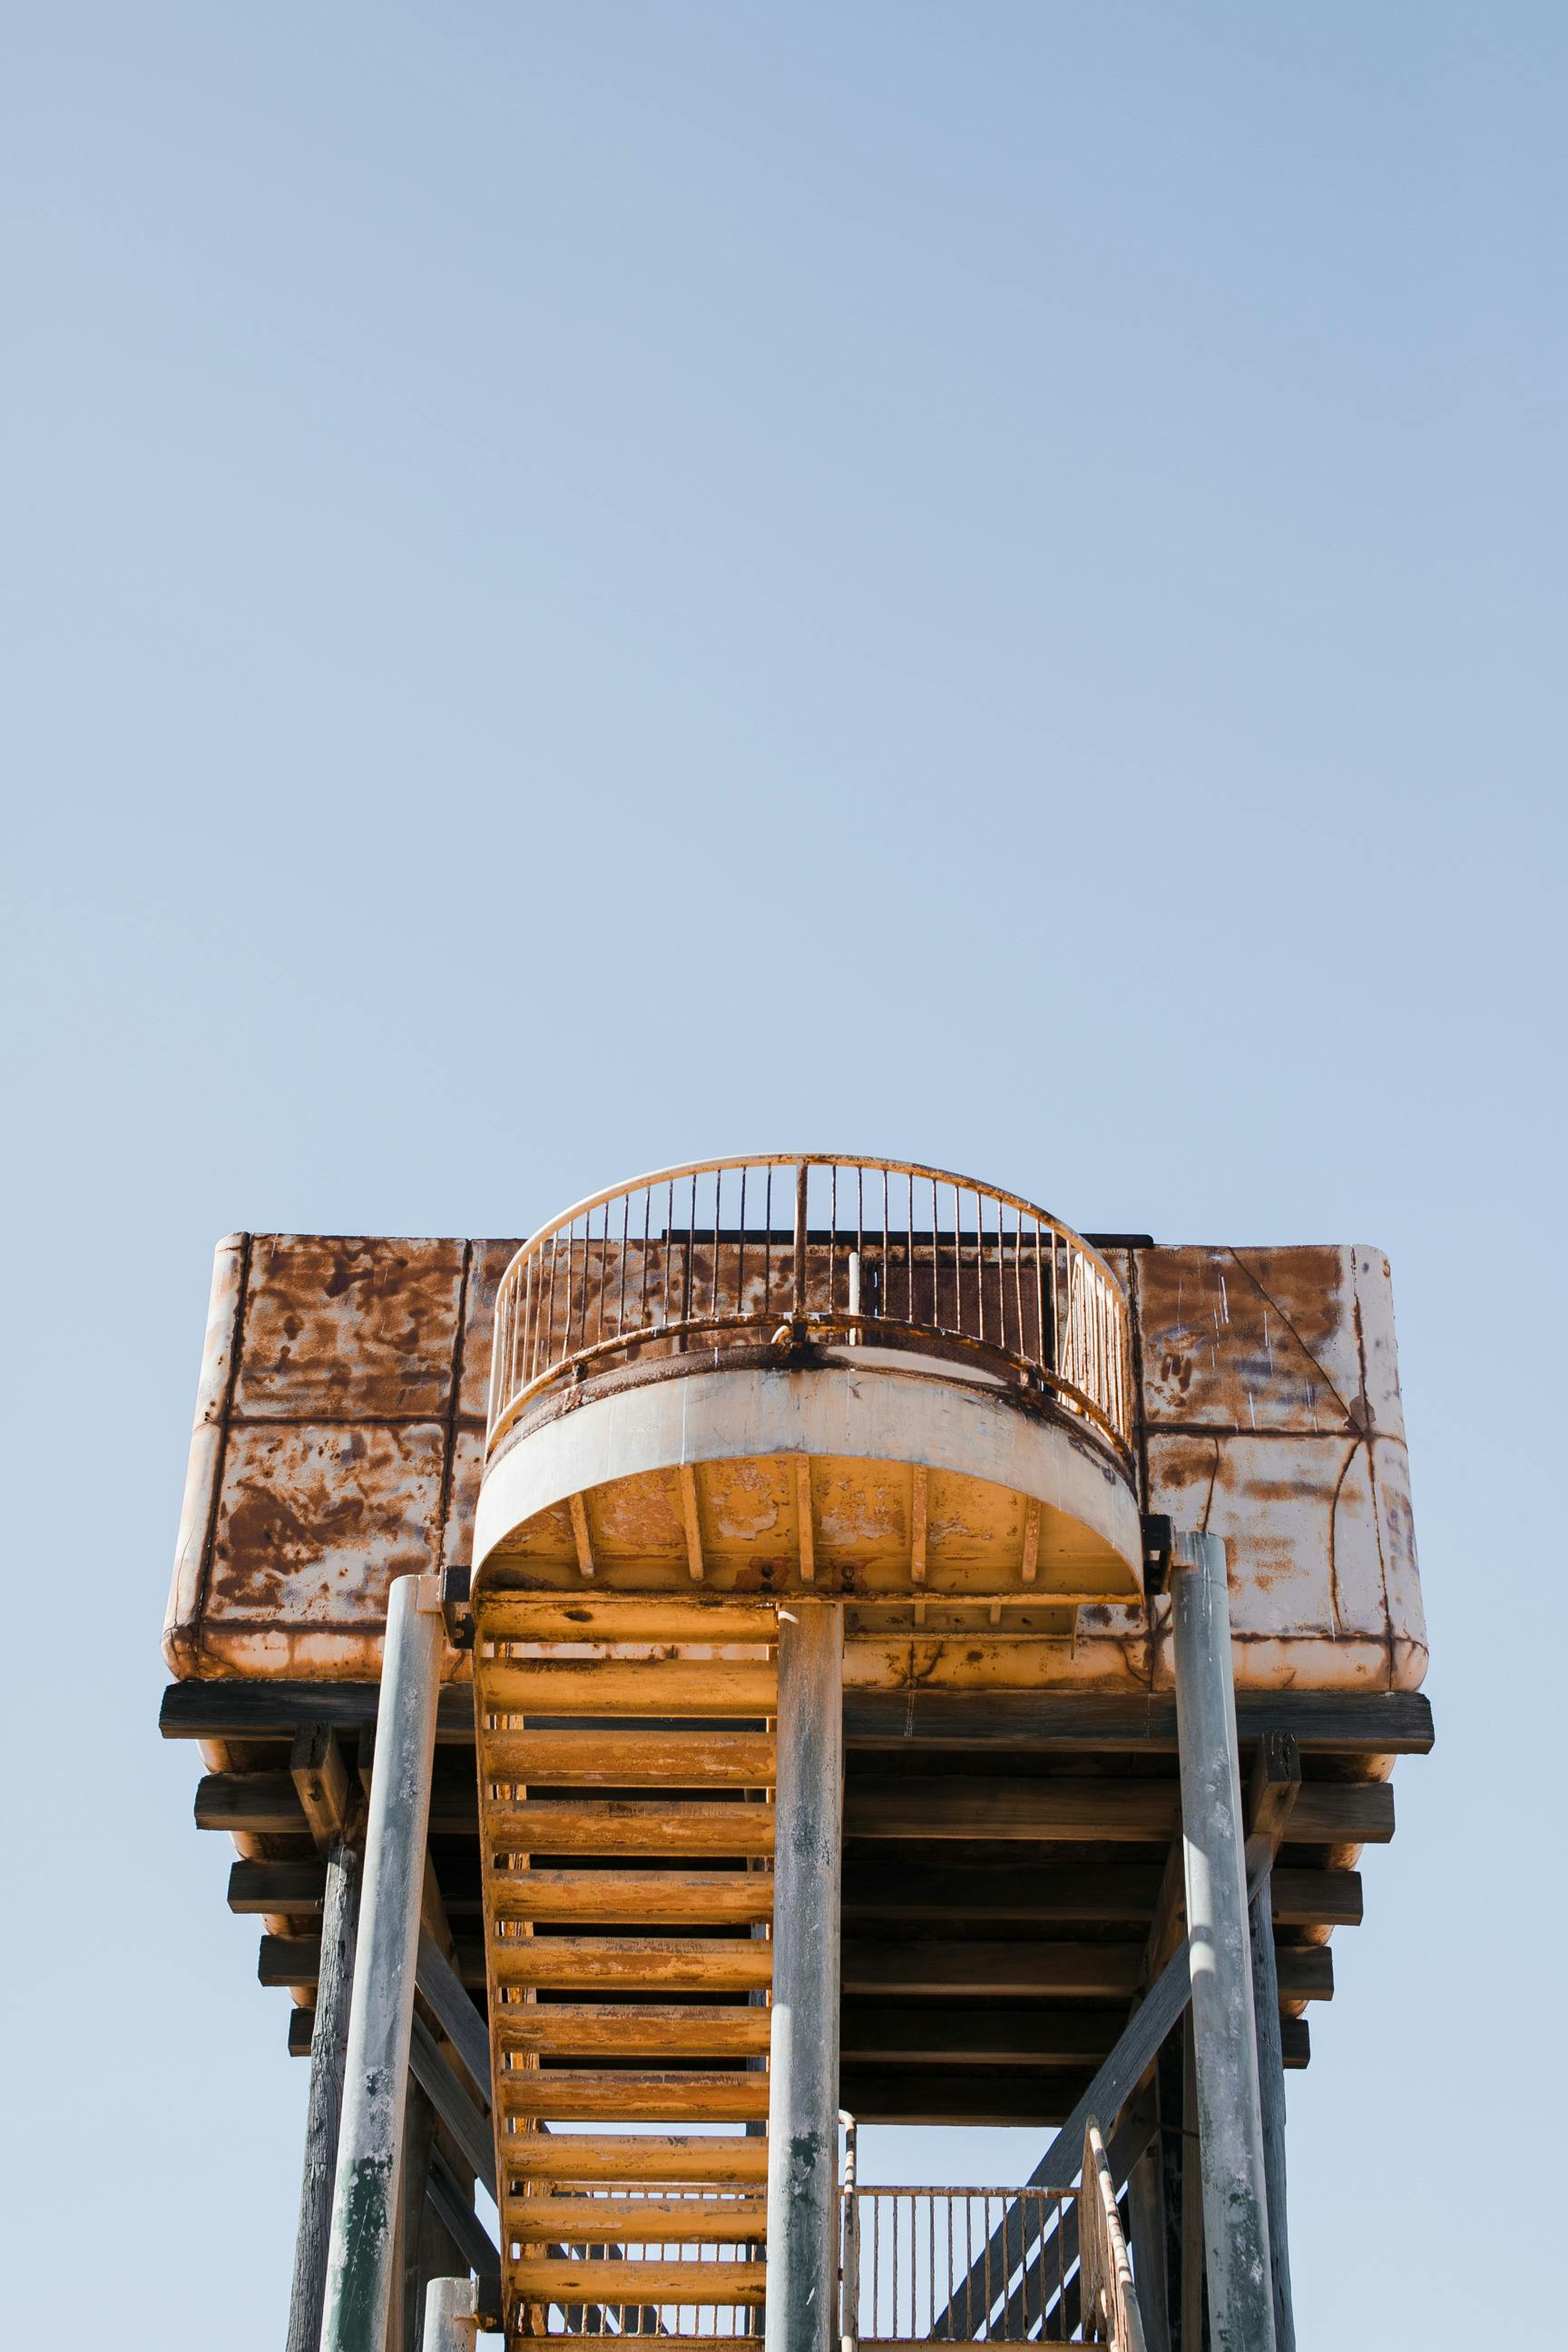 old building of metal observation deck